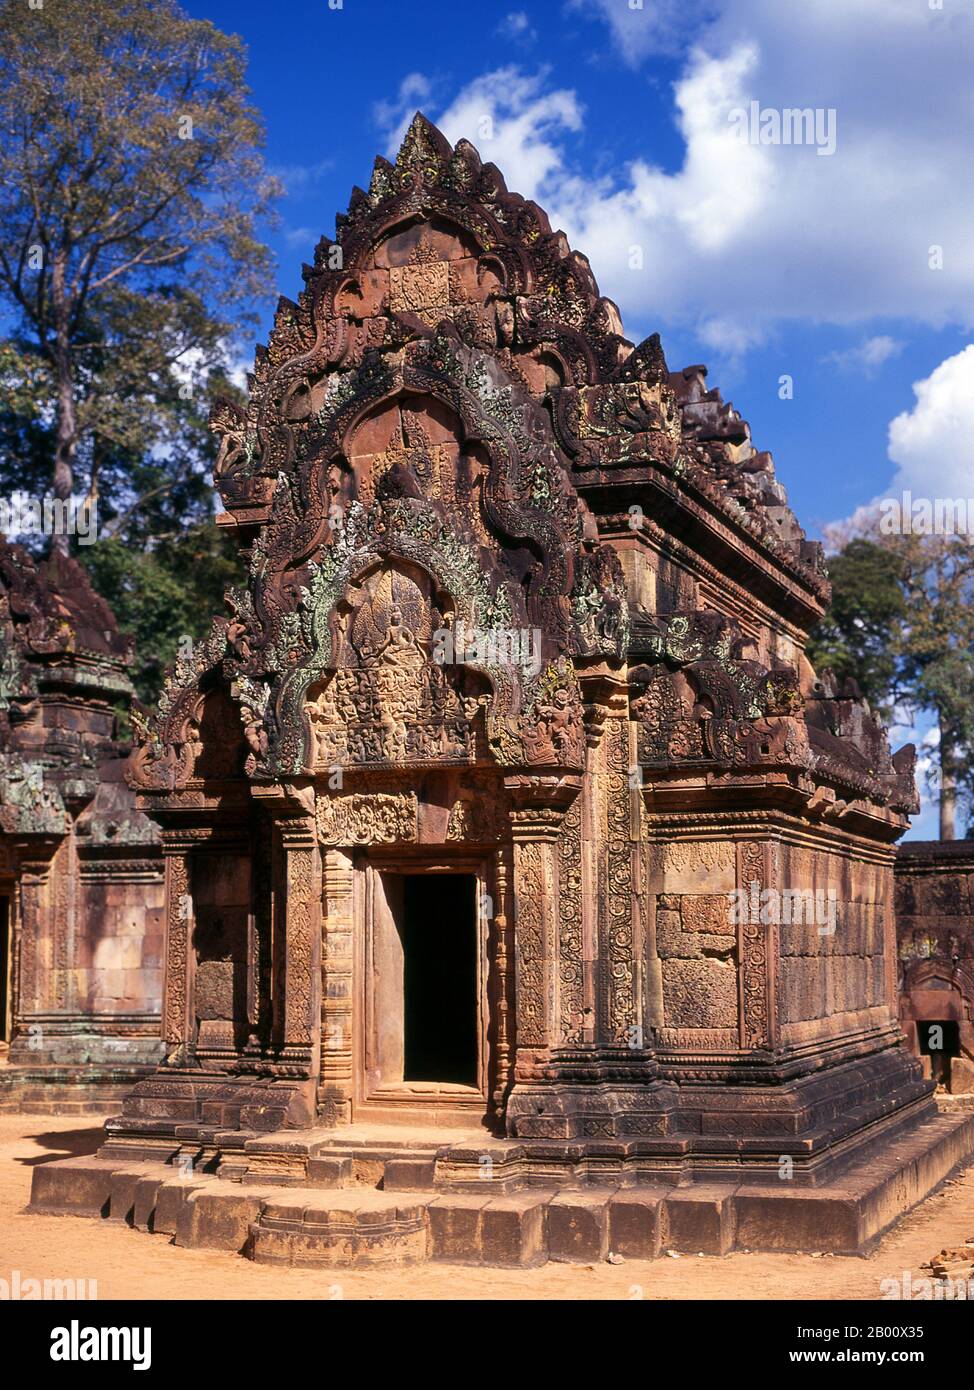 Kambodscha: Teil des inneren Geheges, Banteay Srei (Zitadelle der Frauen), in der Nähe von Angkor. Banteay Srei (oder Banteay Srey) ist ein kambodschanischer Tempel aus dem 10. Jahrhundert, der dem Hindu-gott Shiva gewidmet ist und im Nordosten der Hauptgruppe von Tempeln in Angkor liegt. Banteay Srei ist weitgehend aus rotem Sandstein gebaut, ein Medium, das sich für die aufwendigen dekorativen Wandschnitzereien eignet, die noch heute zu beobachten sind. Banteay Srei wird manchmal als das "Juwel der Khmer-Kunst" bezeichnet. Stockfoto